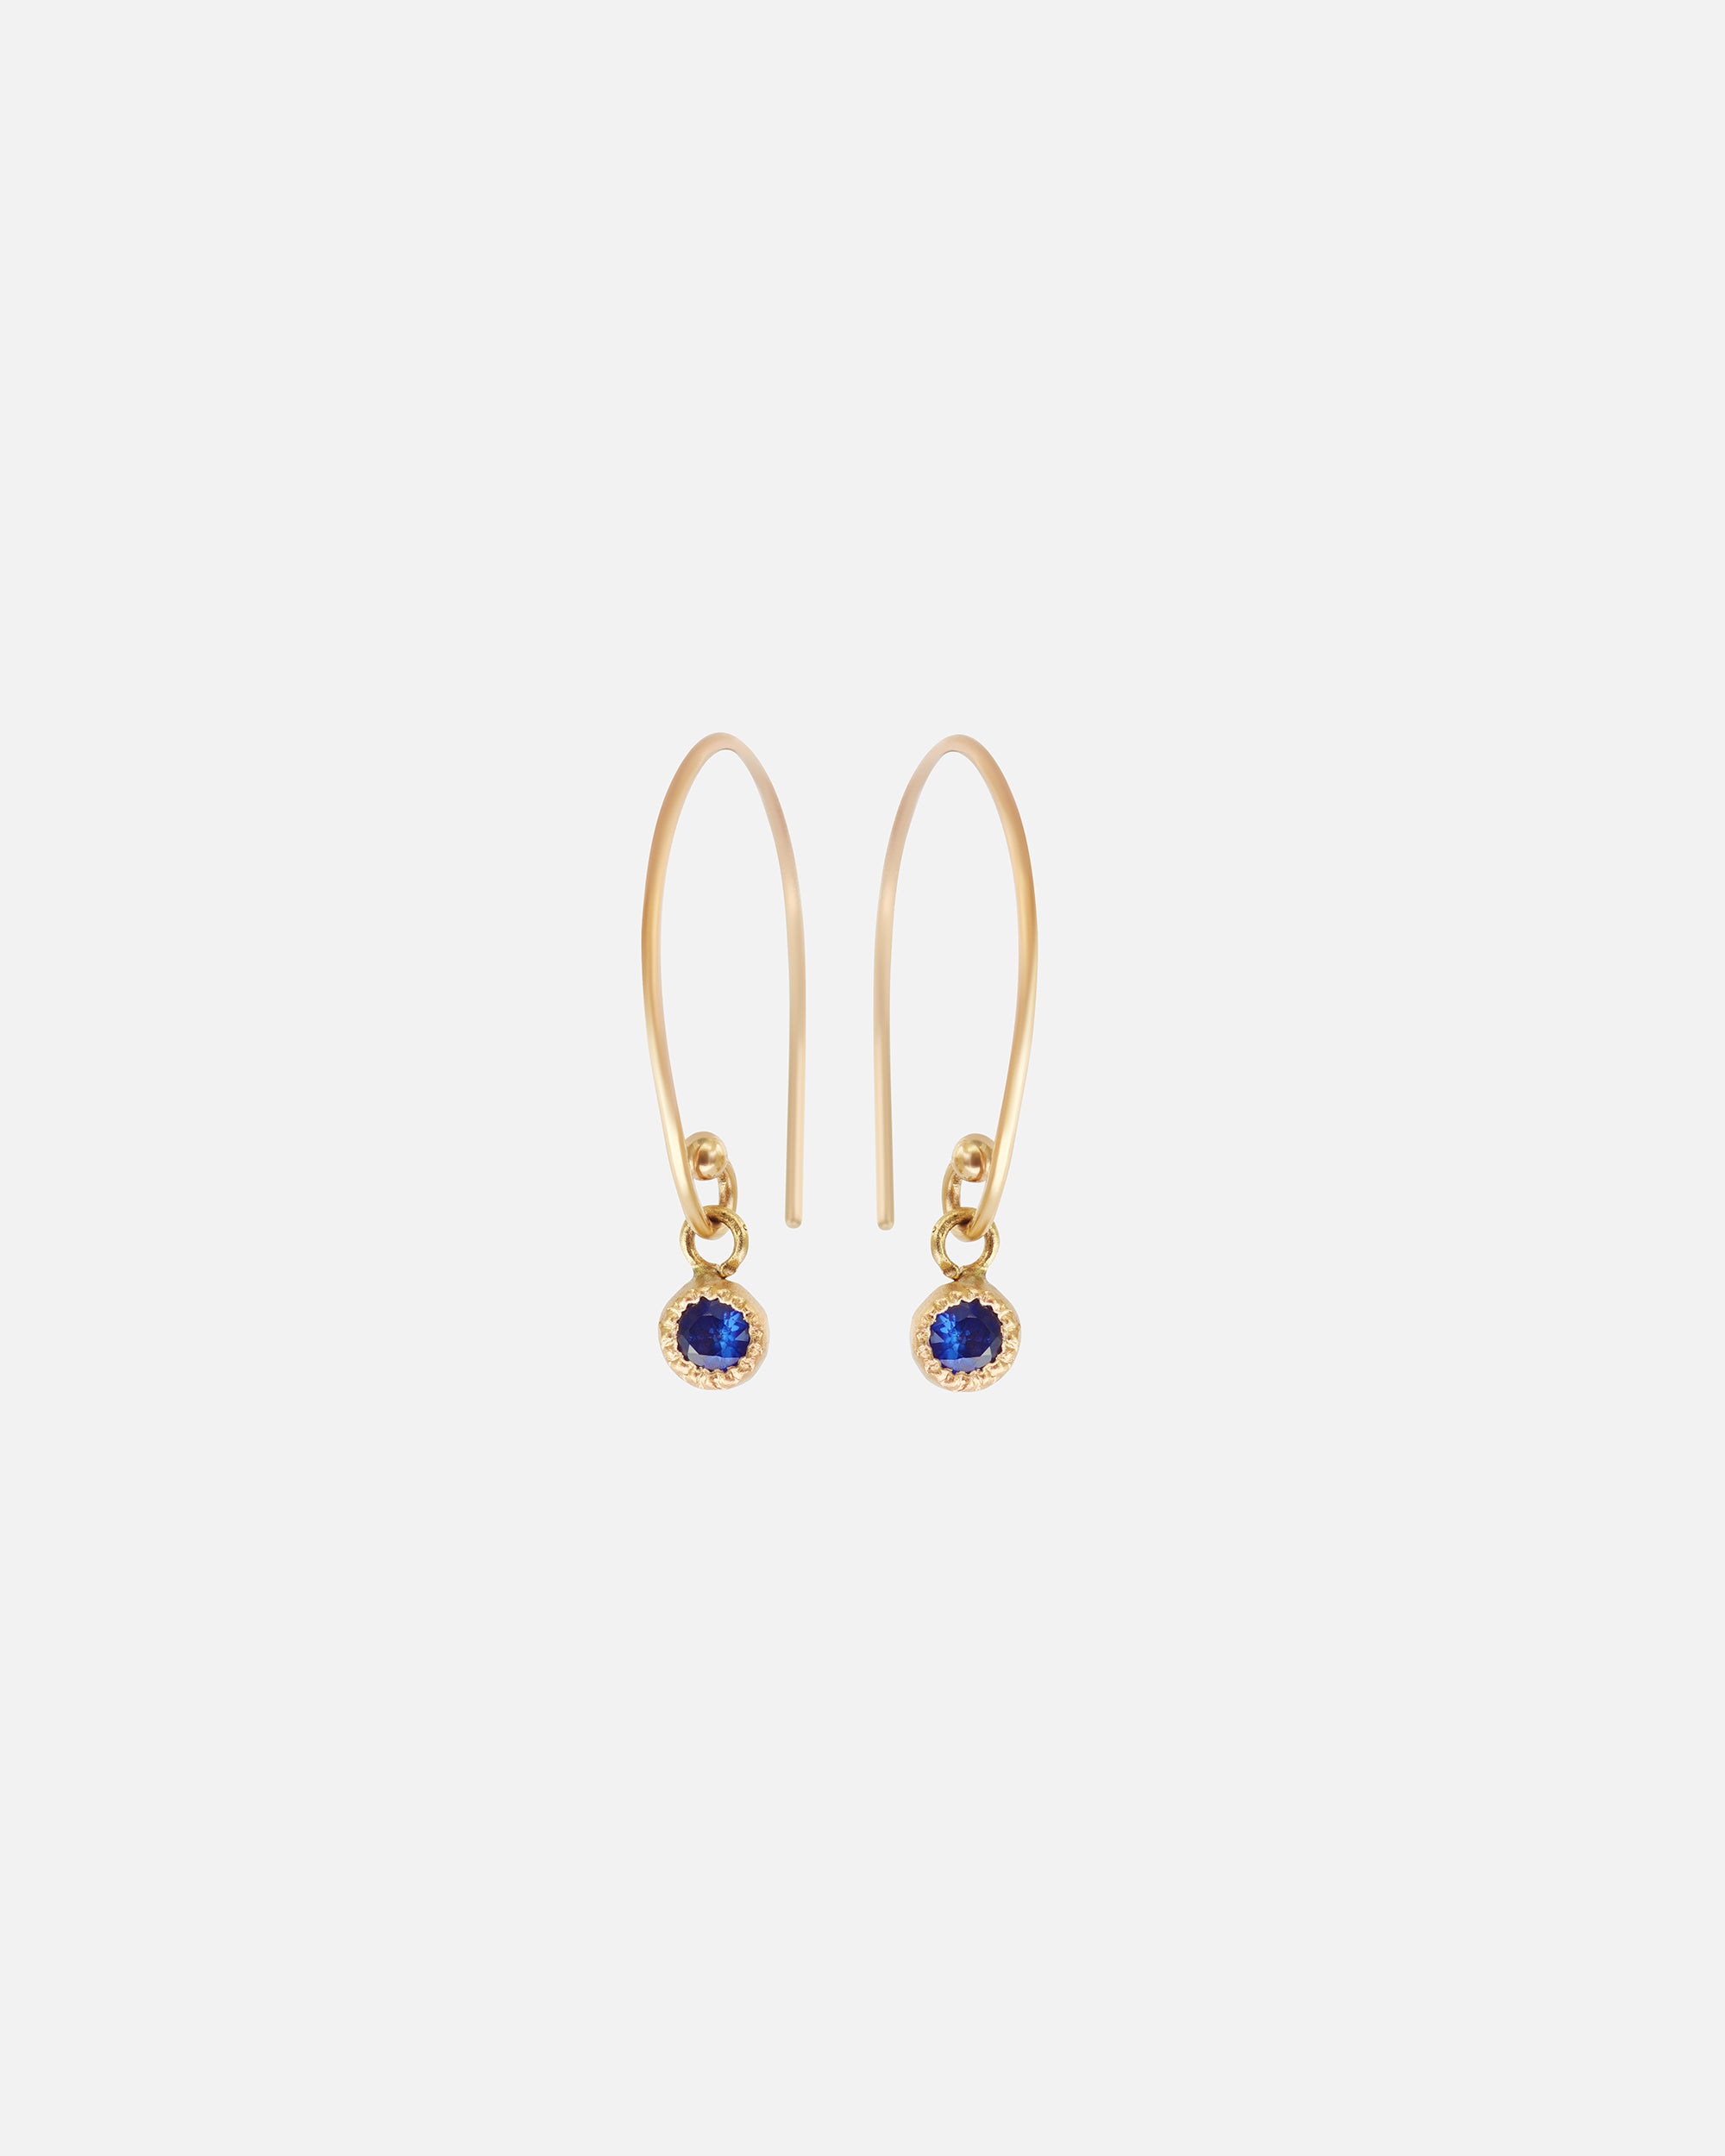 Melee Ball Loop / Sapphire Earrings By Hiroyo